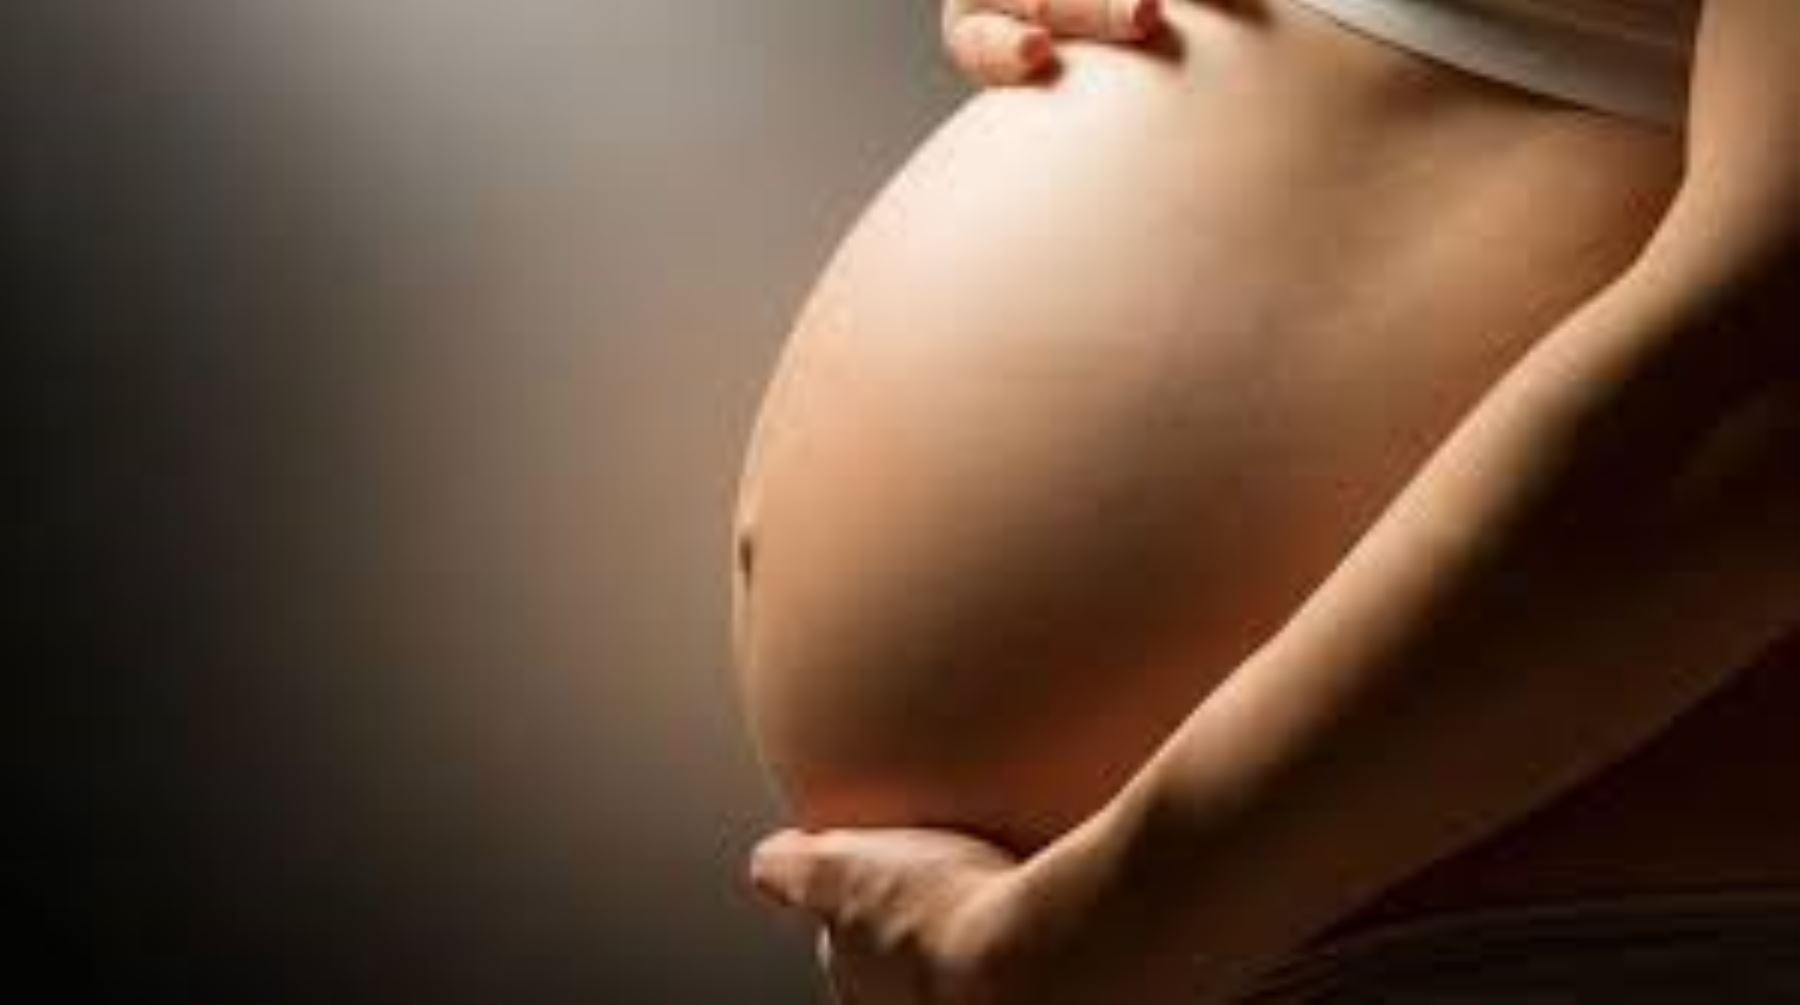 La tecnología de reproducción asistida es frecuente en el mundo y alcanza cifras importantes.